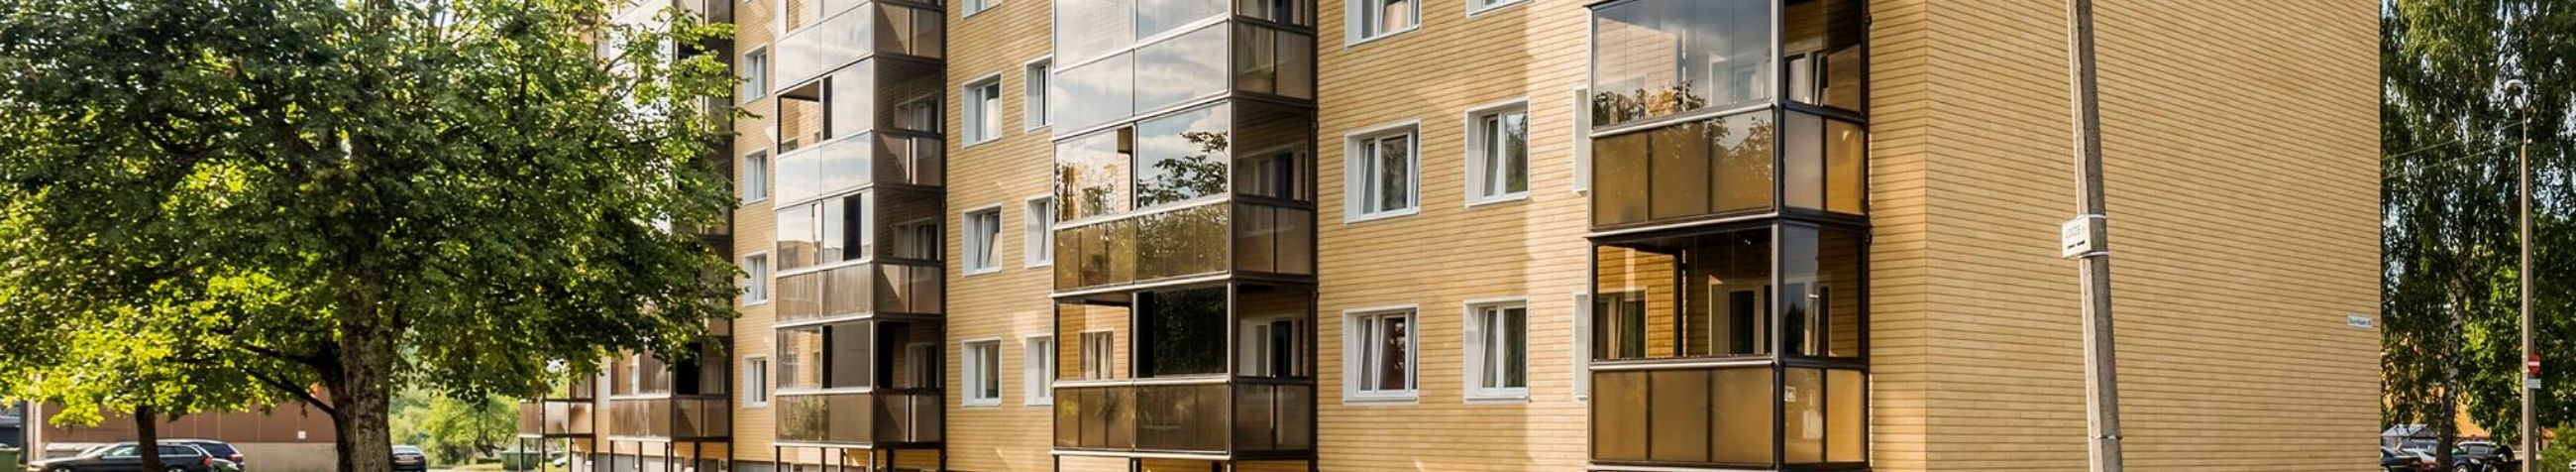 Kortermajade Rekonstrueerimine, katusekorterid, Projekteerimine, arendusprojektid, tootearendus, kinnisvaraarenduse projektid, ehitusprojektide juhtimine, hoonete projekteerimisteenused, ehitusteenused Eestis, kinnisvaraarendus Eestis